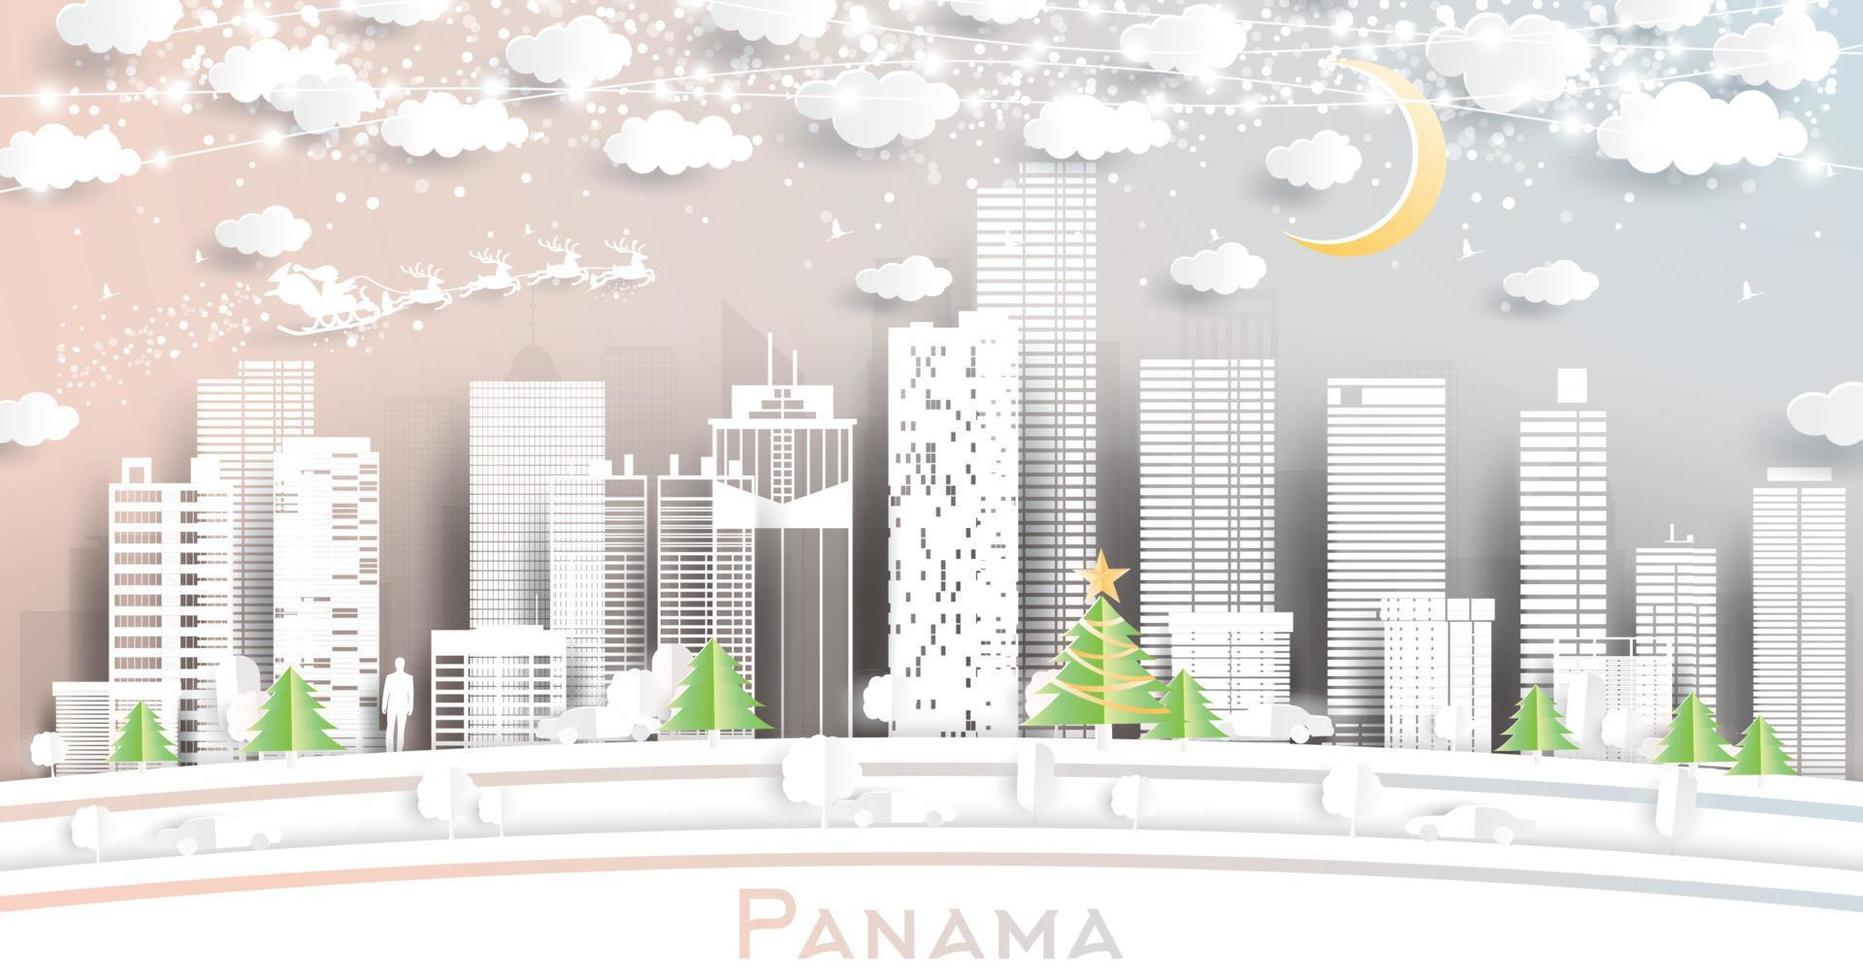 panama stad horisont i papper skära stil med snöflingor, måne och neon krans. vektor